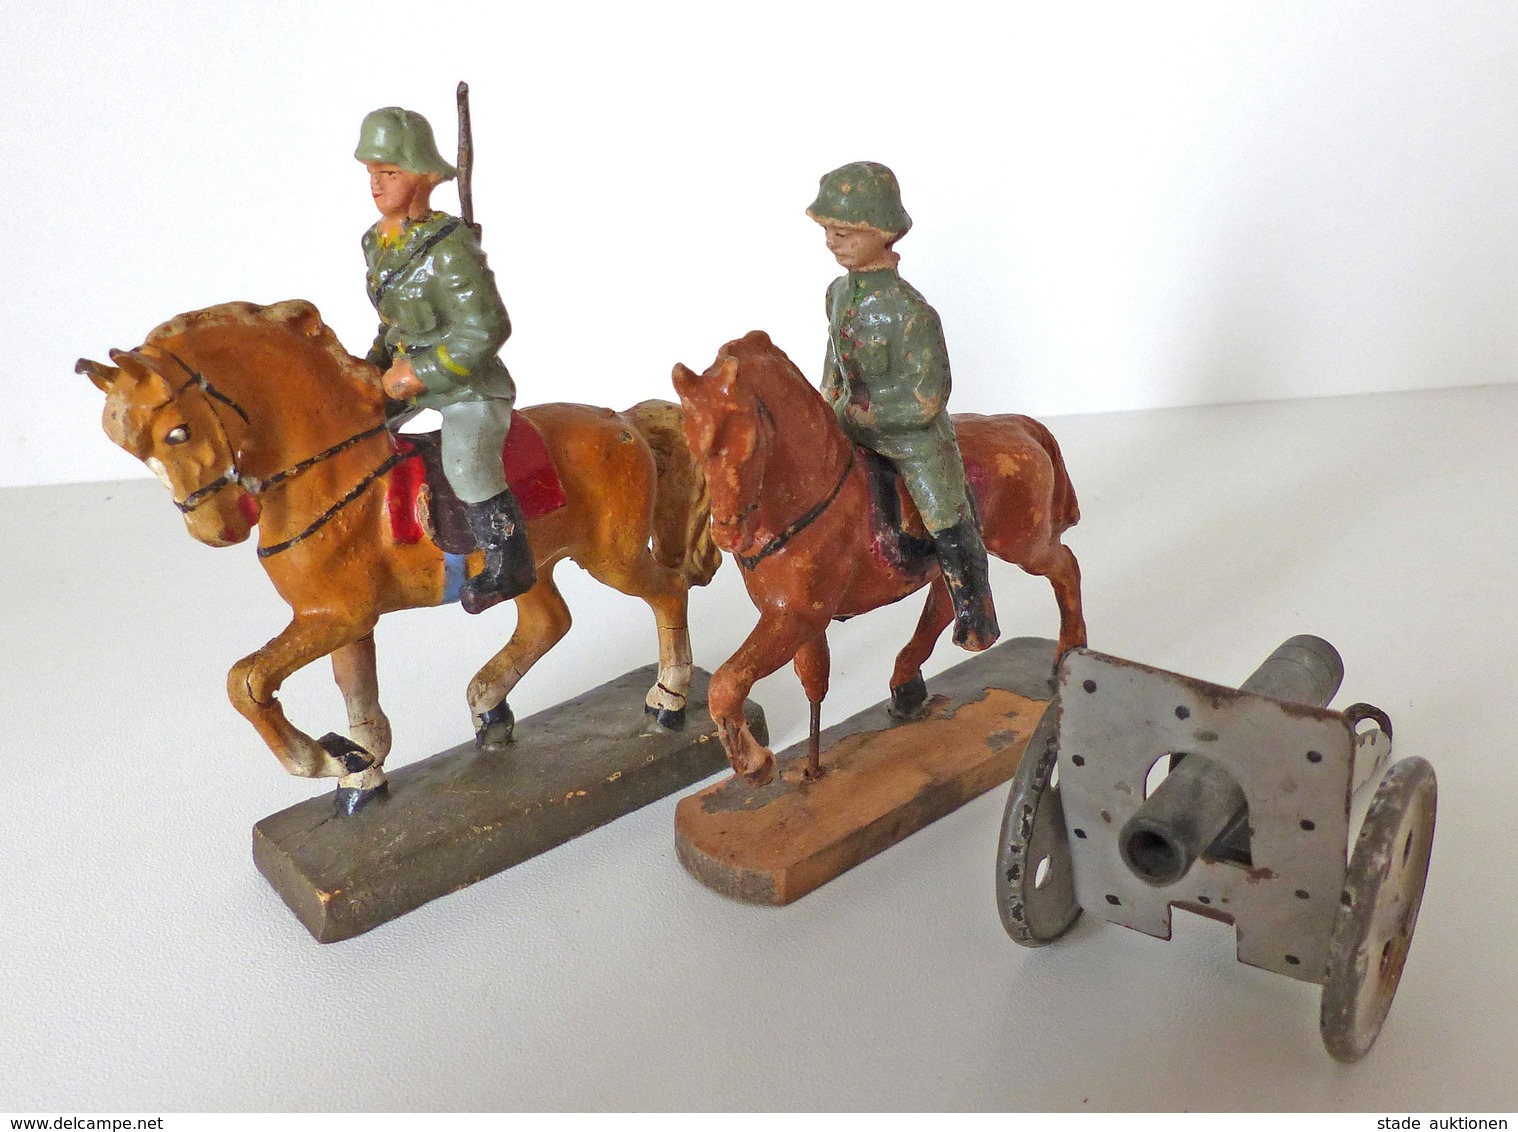 Zwischenkriegszeit Wehrmacht Lineol Figuren Kavalerie 2 Reiter 1 Geschütz Bespielt I-II (altersbedingte Gebrauchsspuren) - History